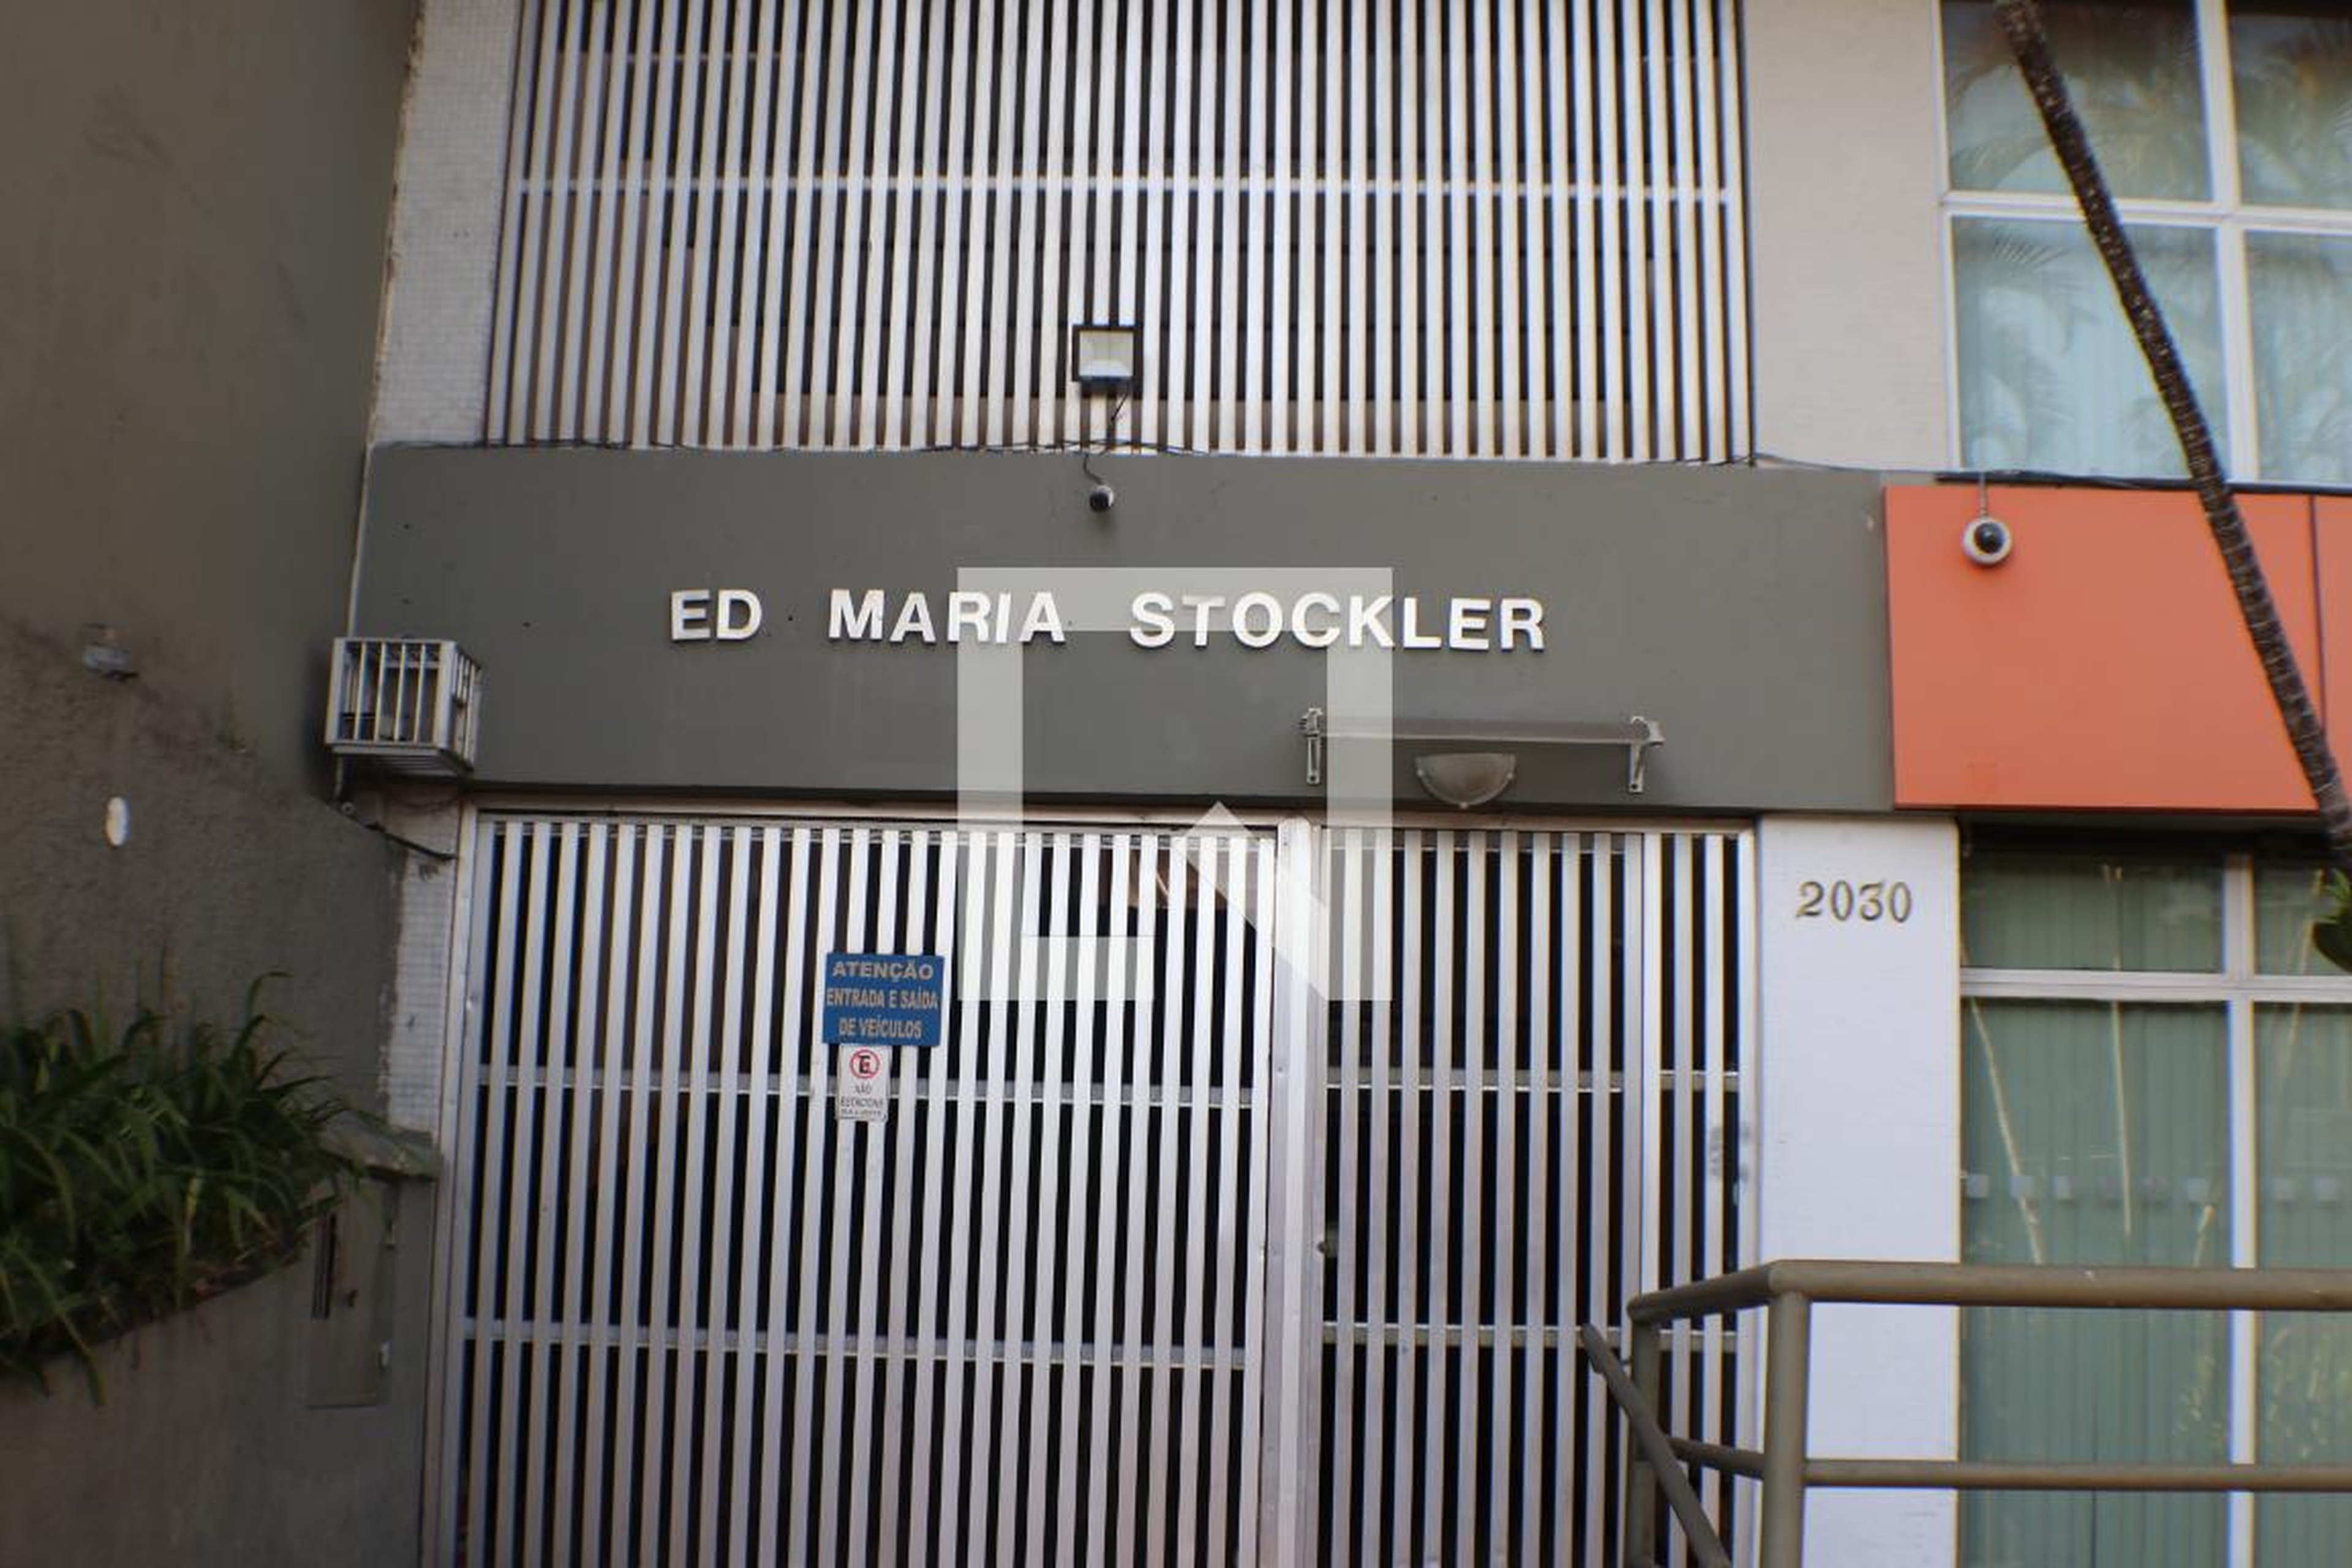 Entrada do prédio - Maria Stockler